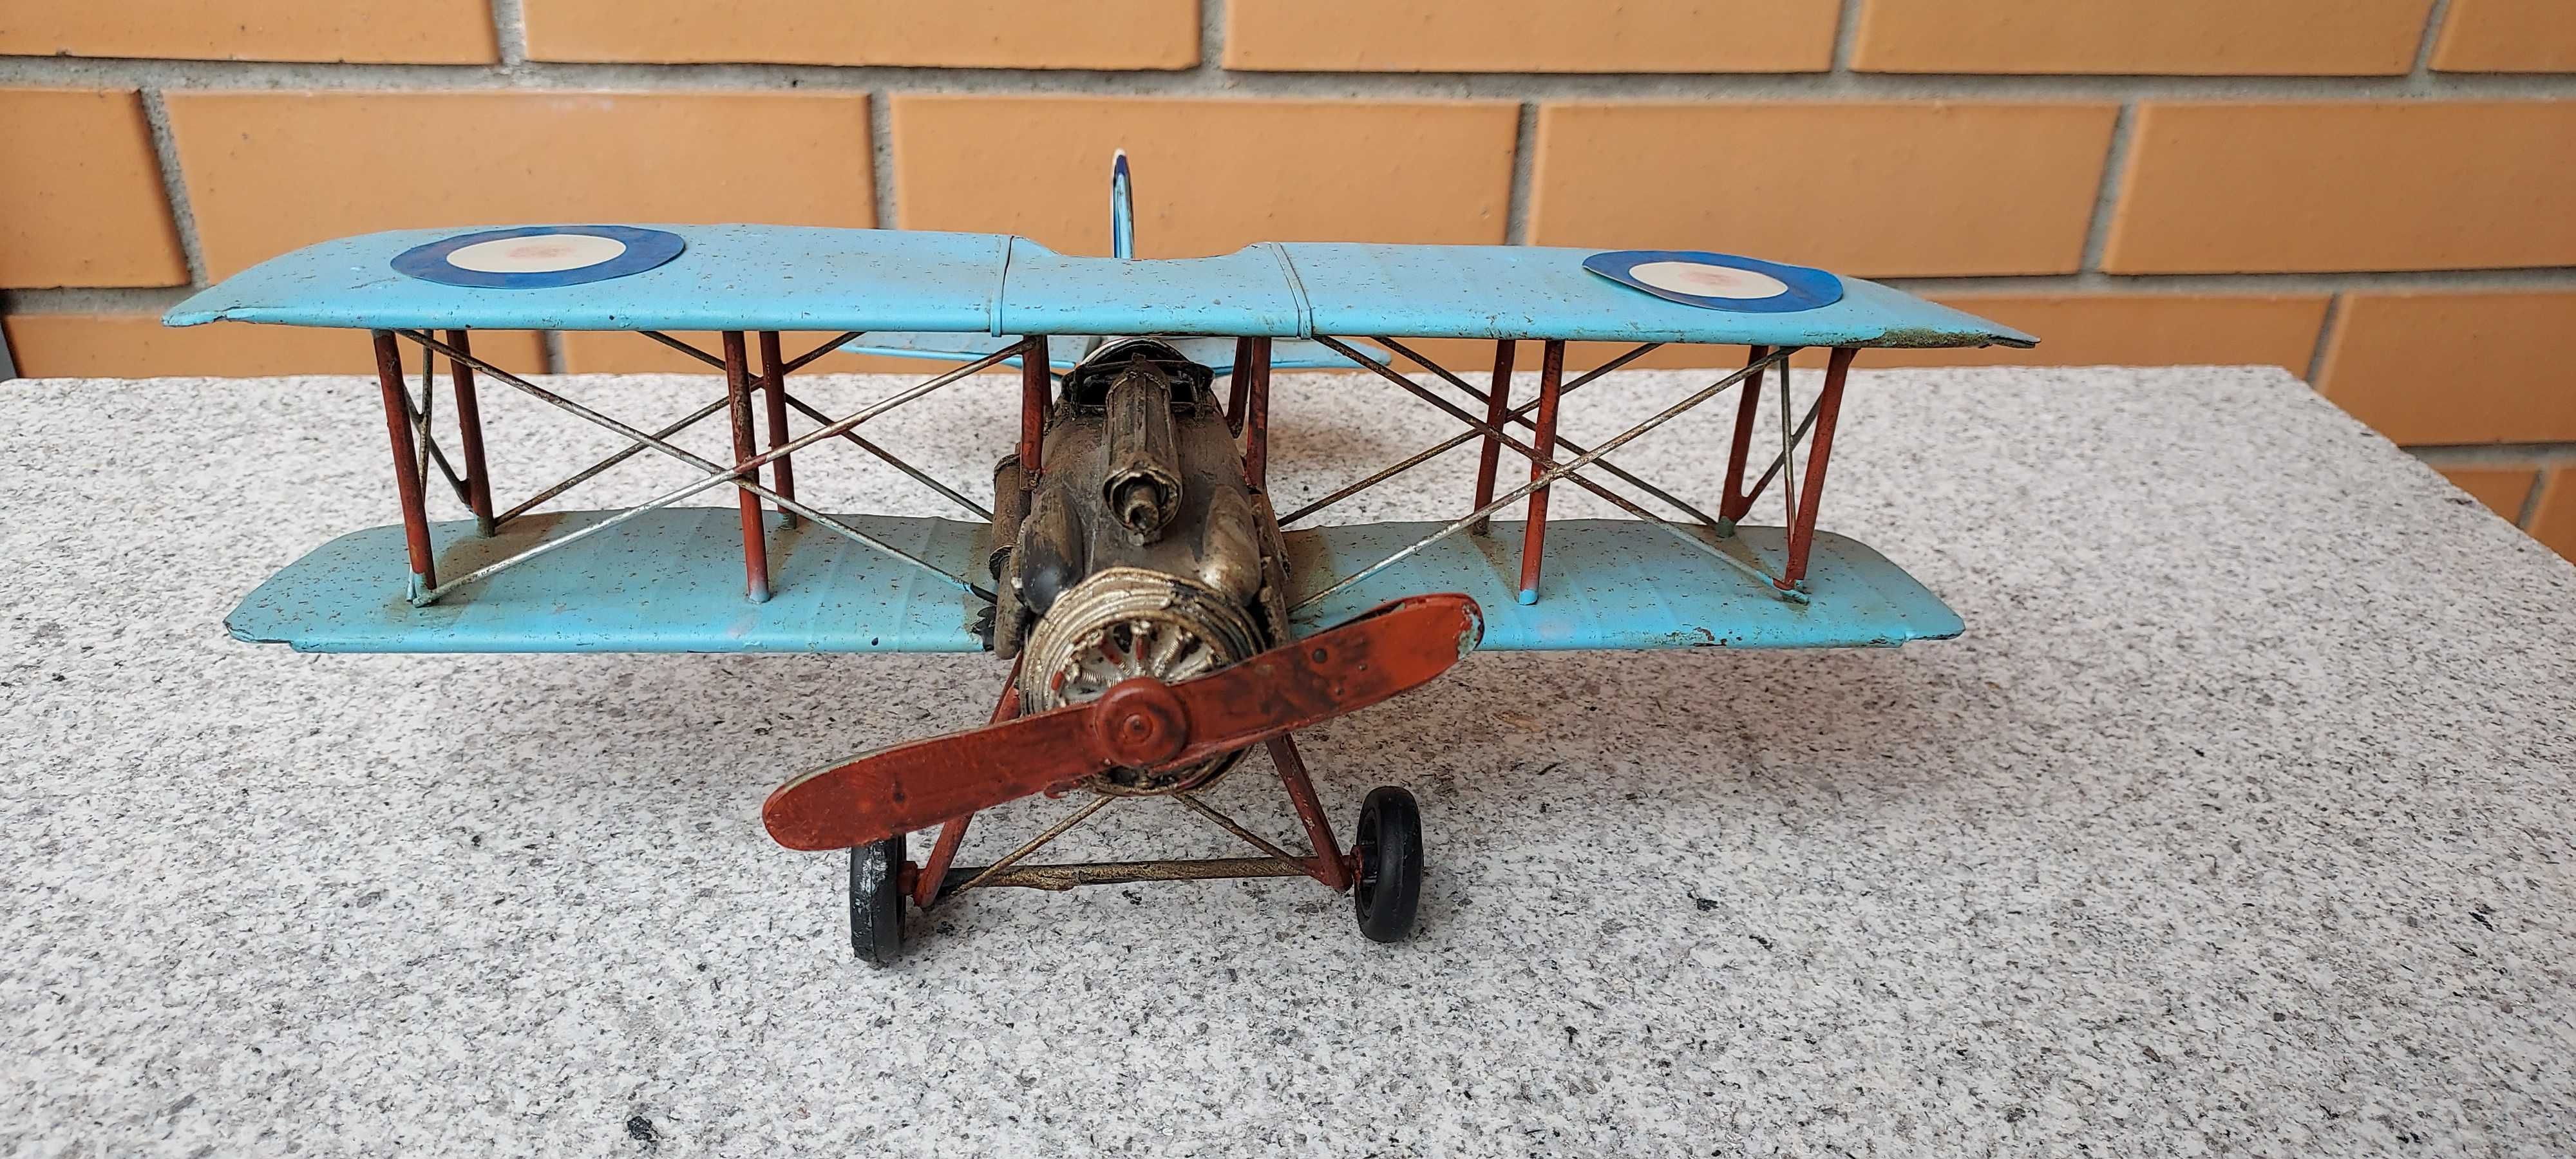 Aeronave decorativa em metal para a sua coleção